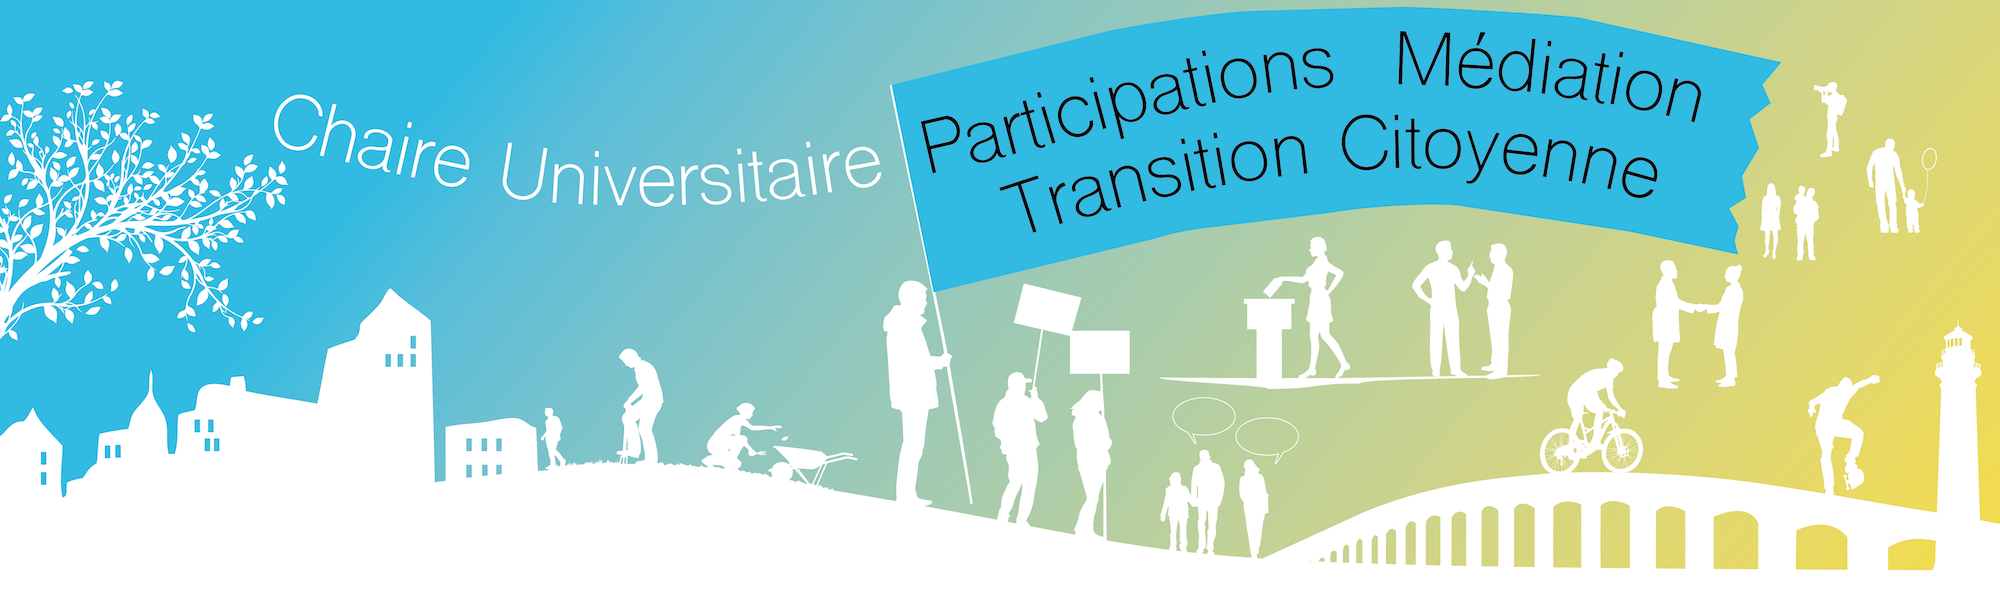 Chaire Universitaire Participations Médiation Transition citoyenne